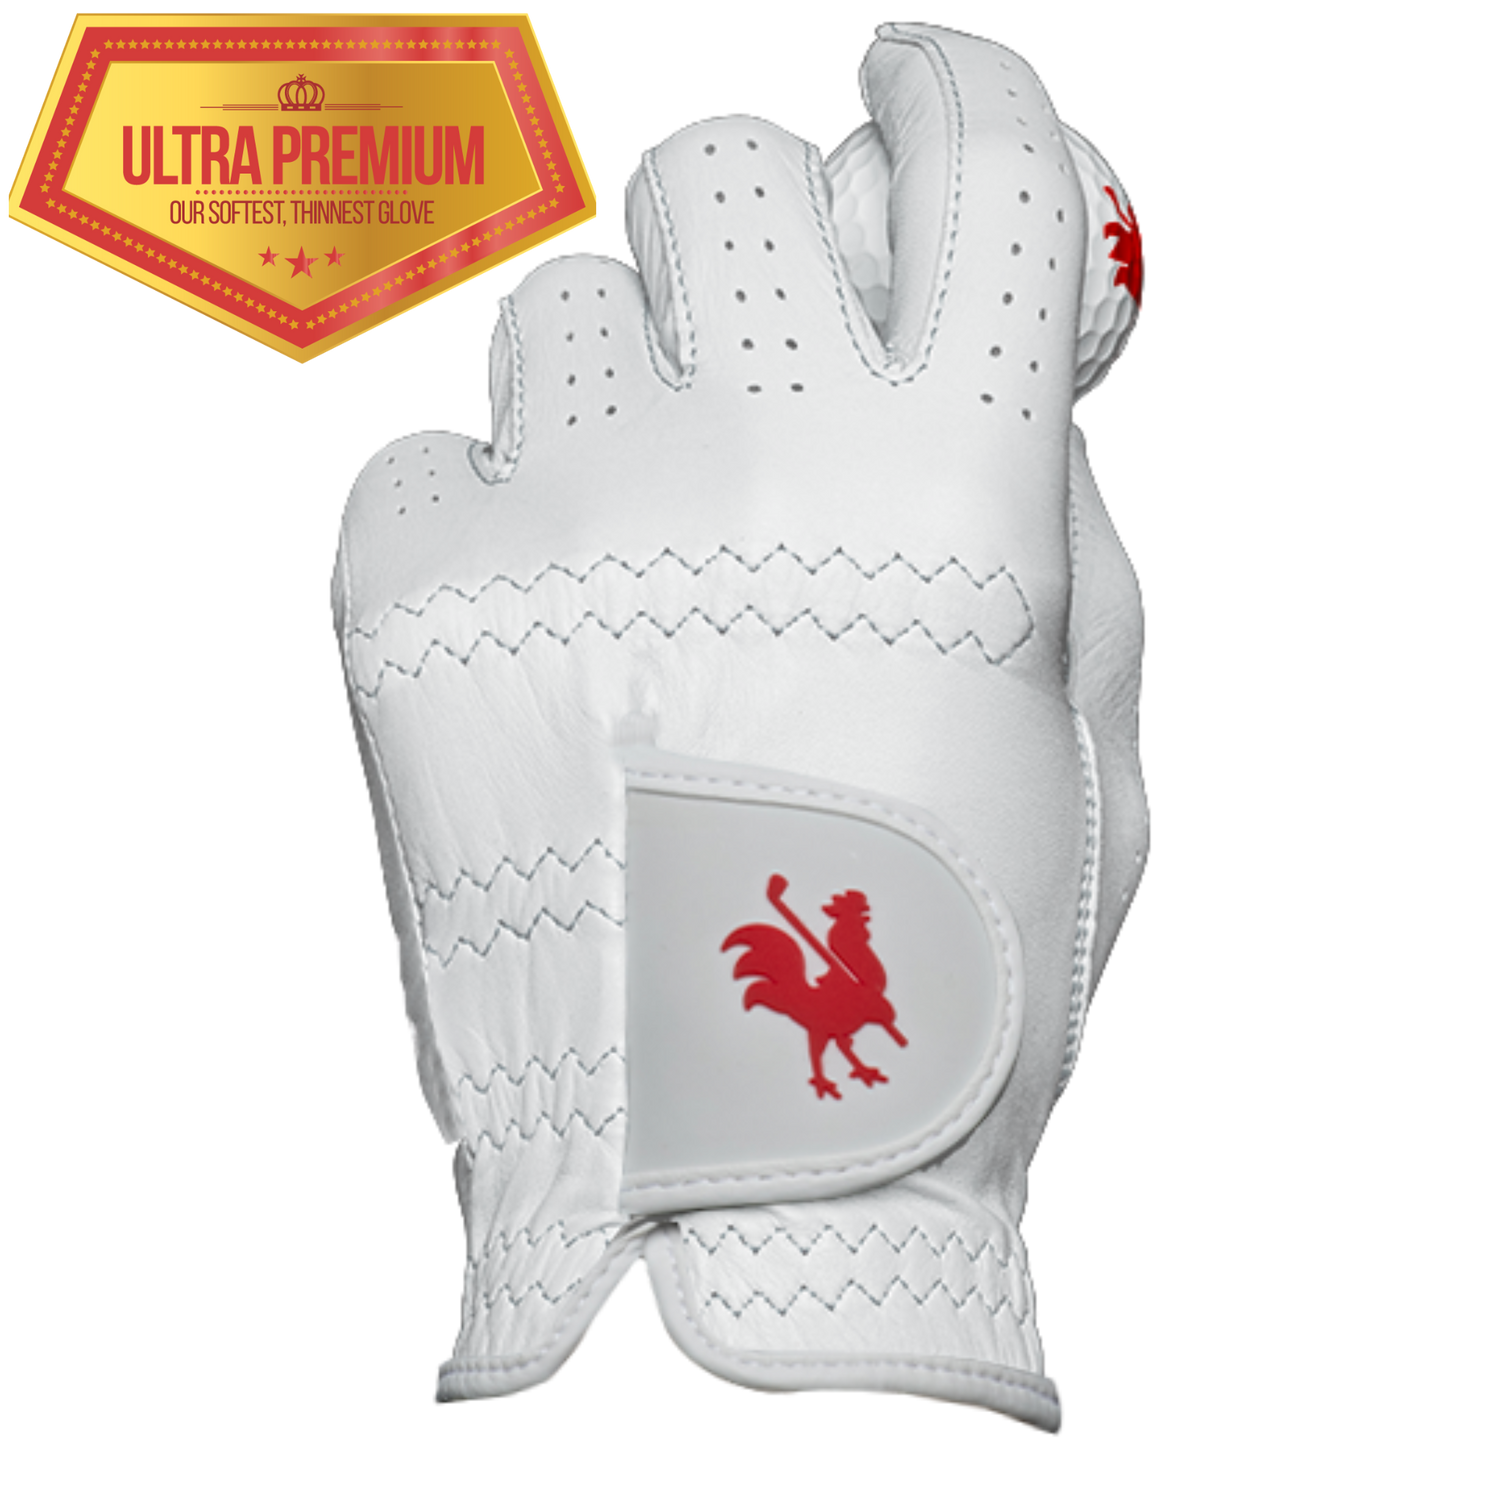 The Sussex golf glove 